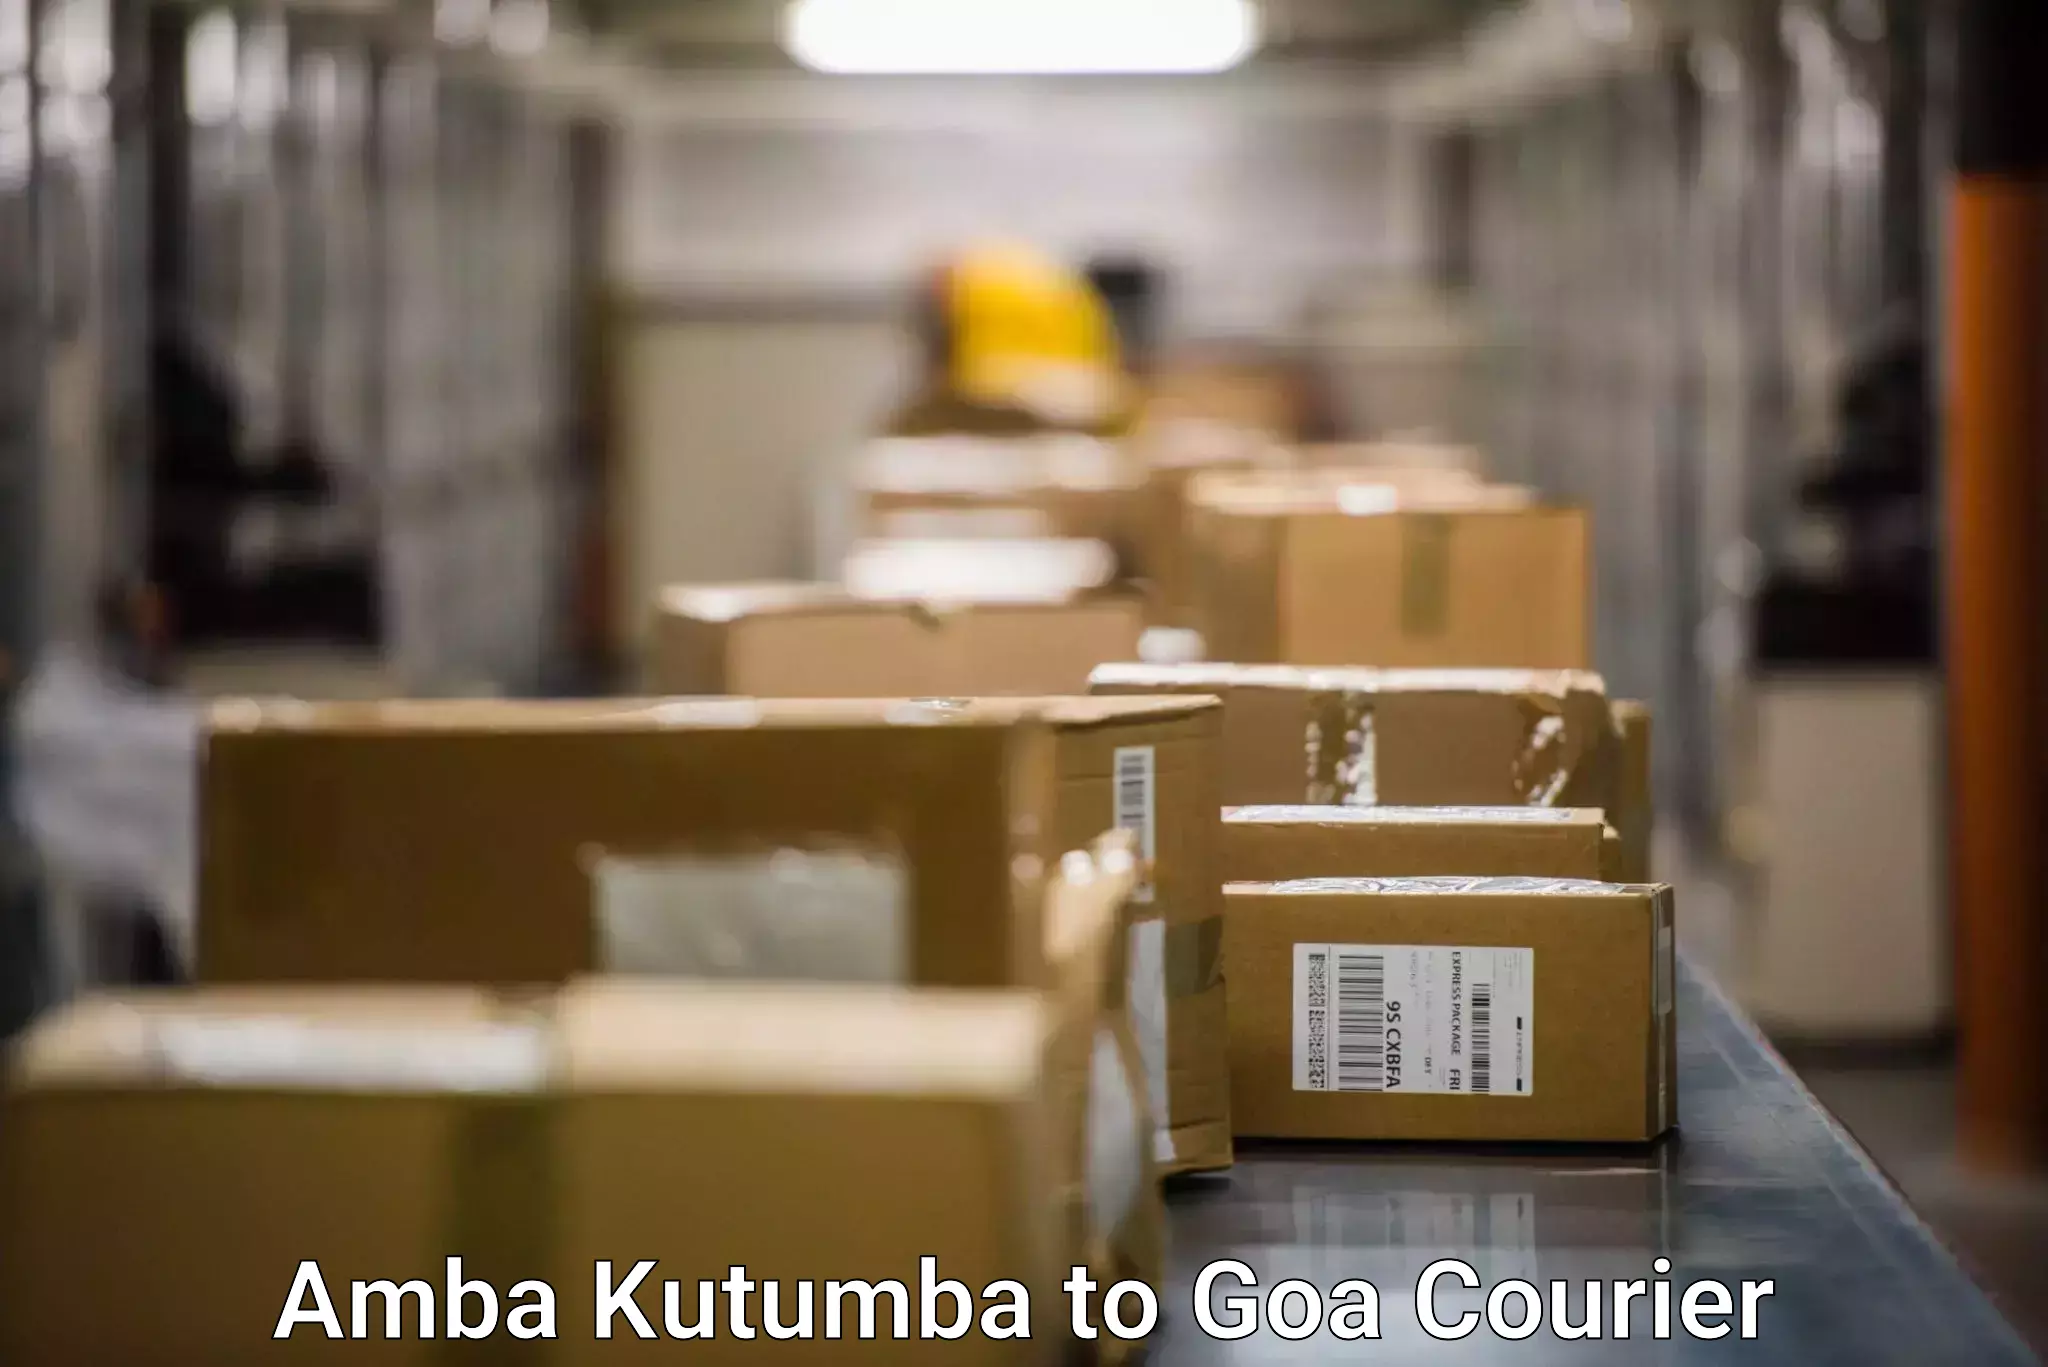 Reliable courier service Amba Kutumba to IIT Goa